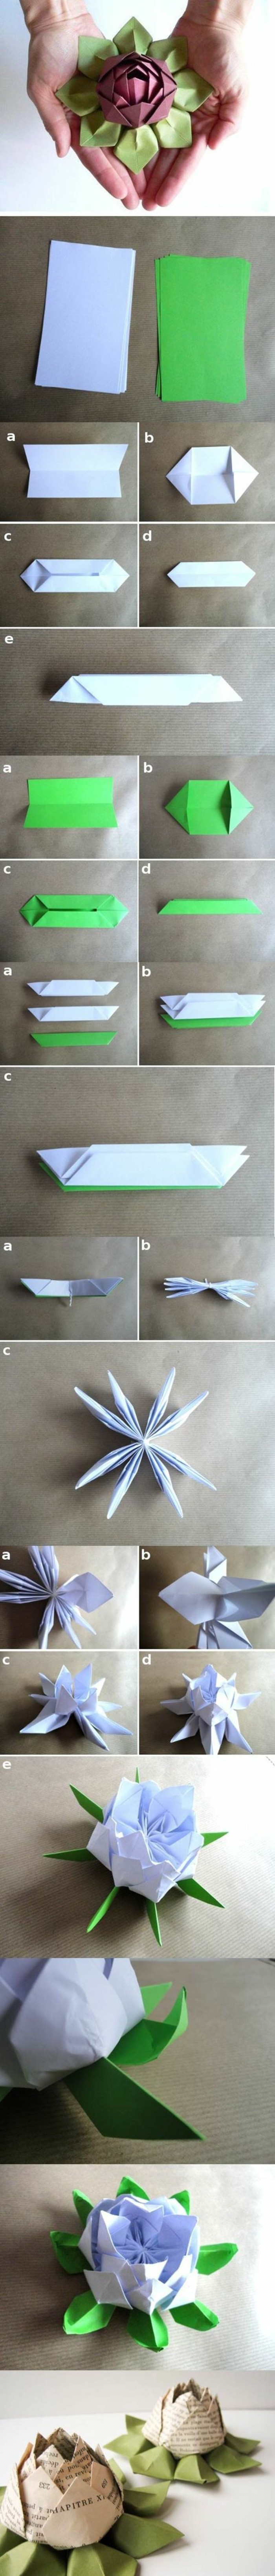 оригами роза оригами цветя сгъване техника хартия оригами сгъване инструкция